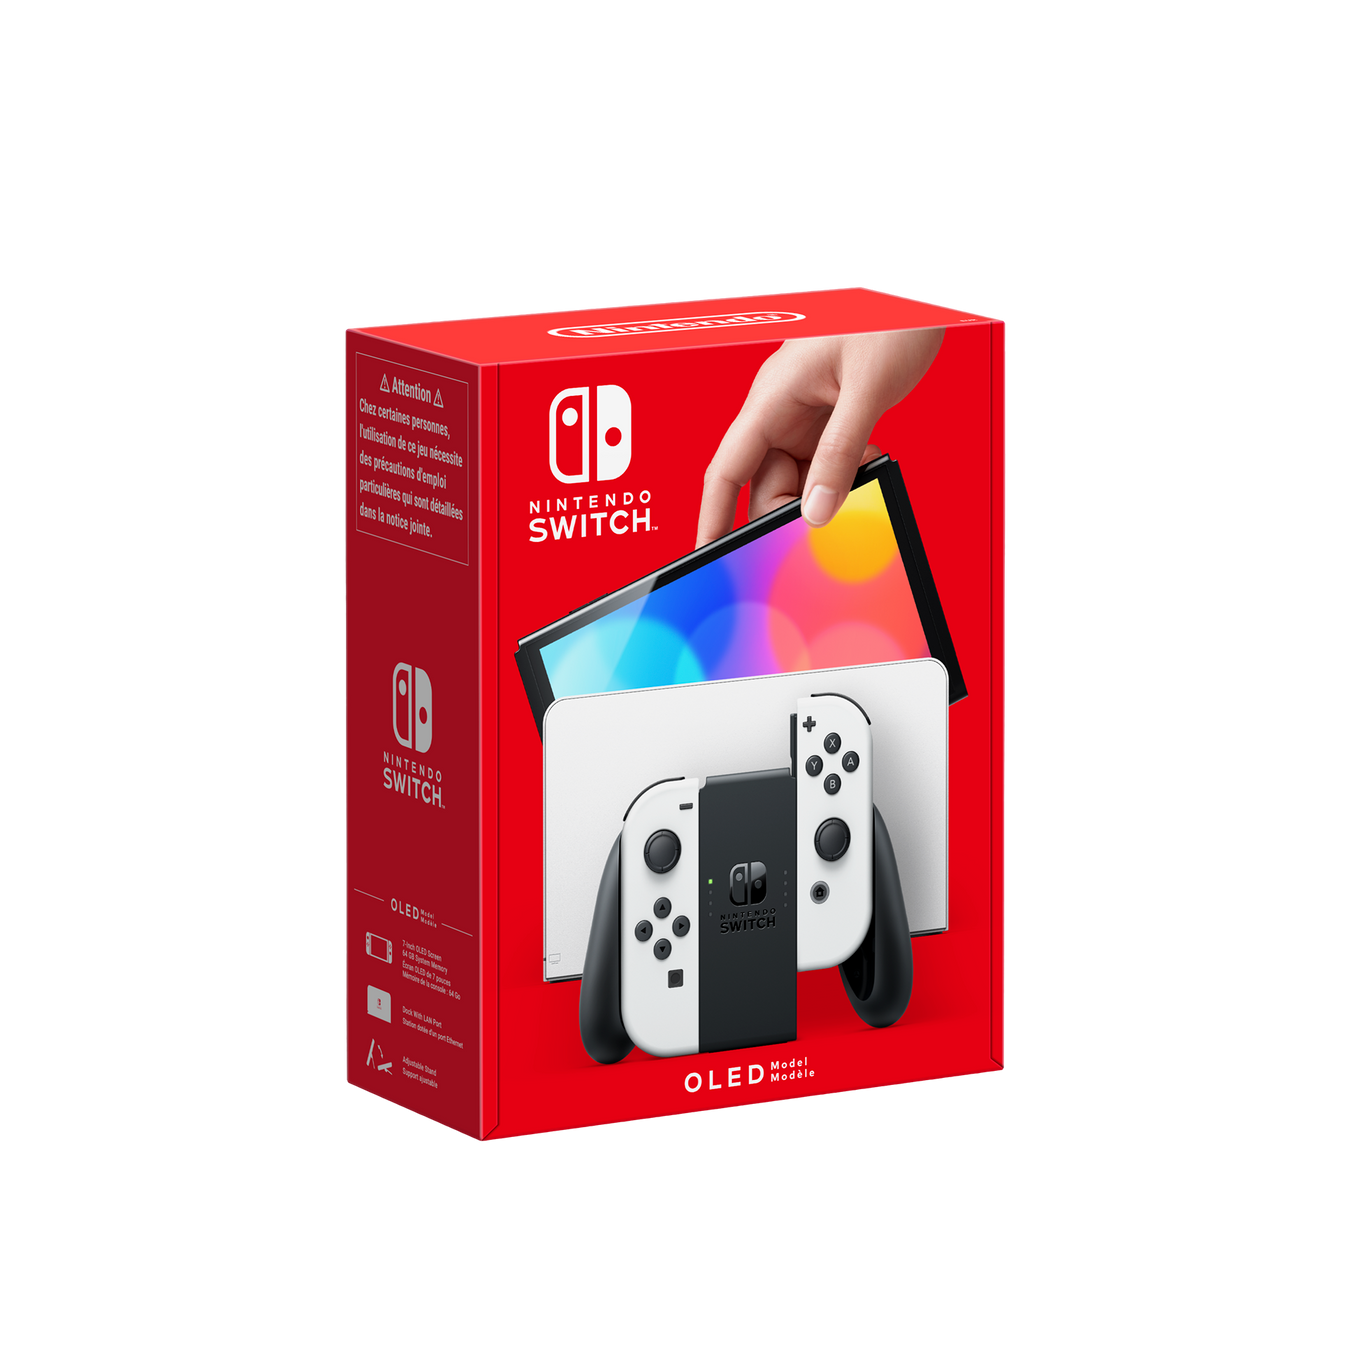 Festive SALE - Nintendo Switch Console Deals